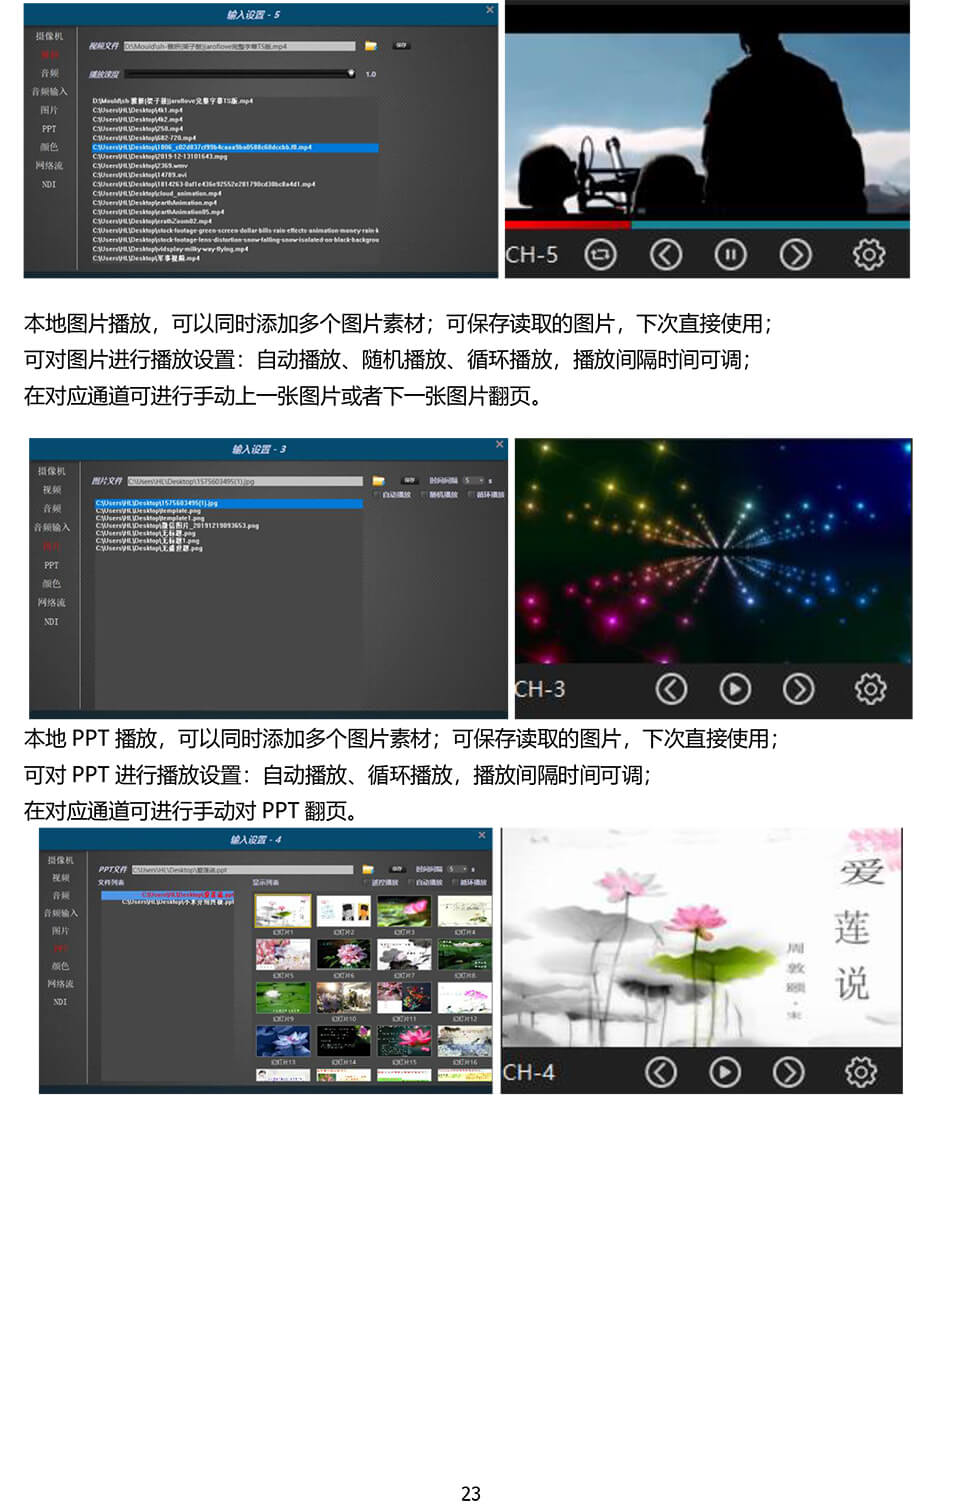 新一路渲染虚拟演播室用户手册-24.jpg